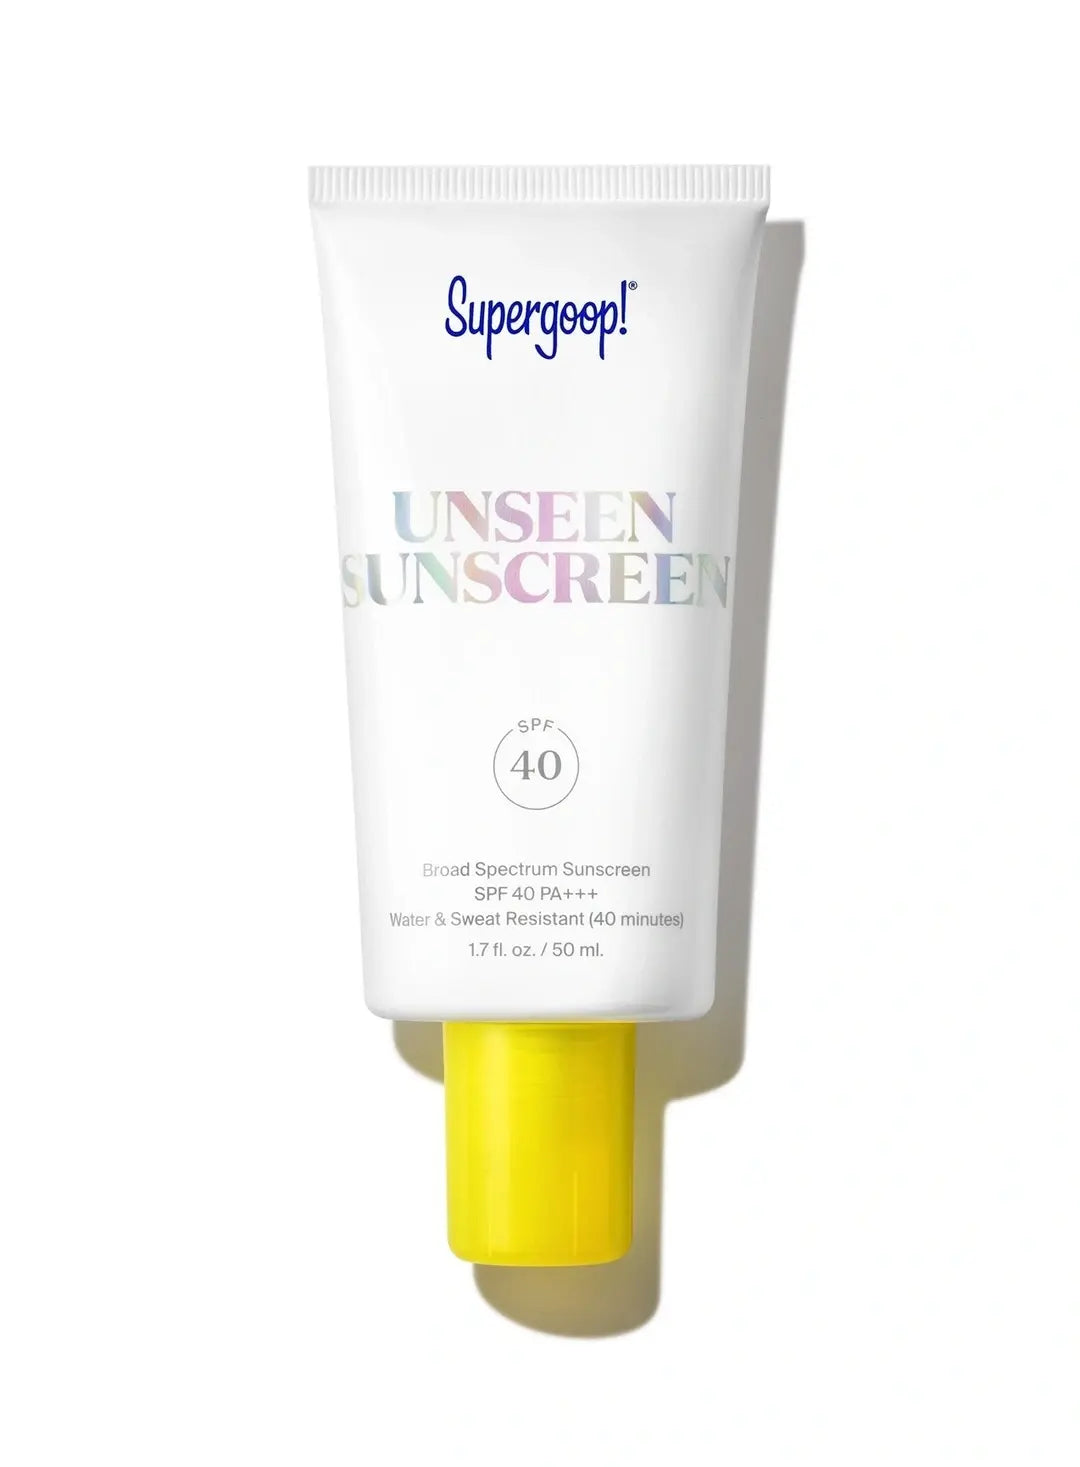 Supergoop! Unseen Sunscreen SFP 40